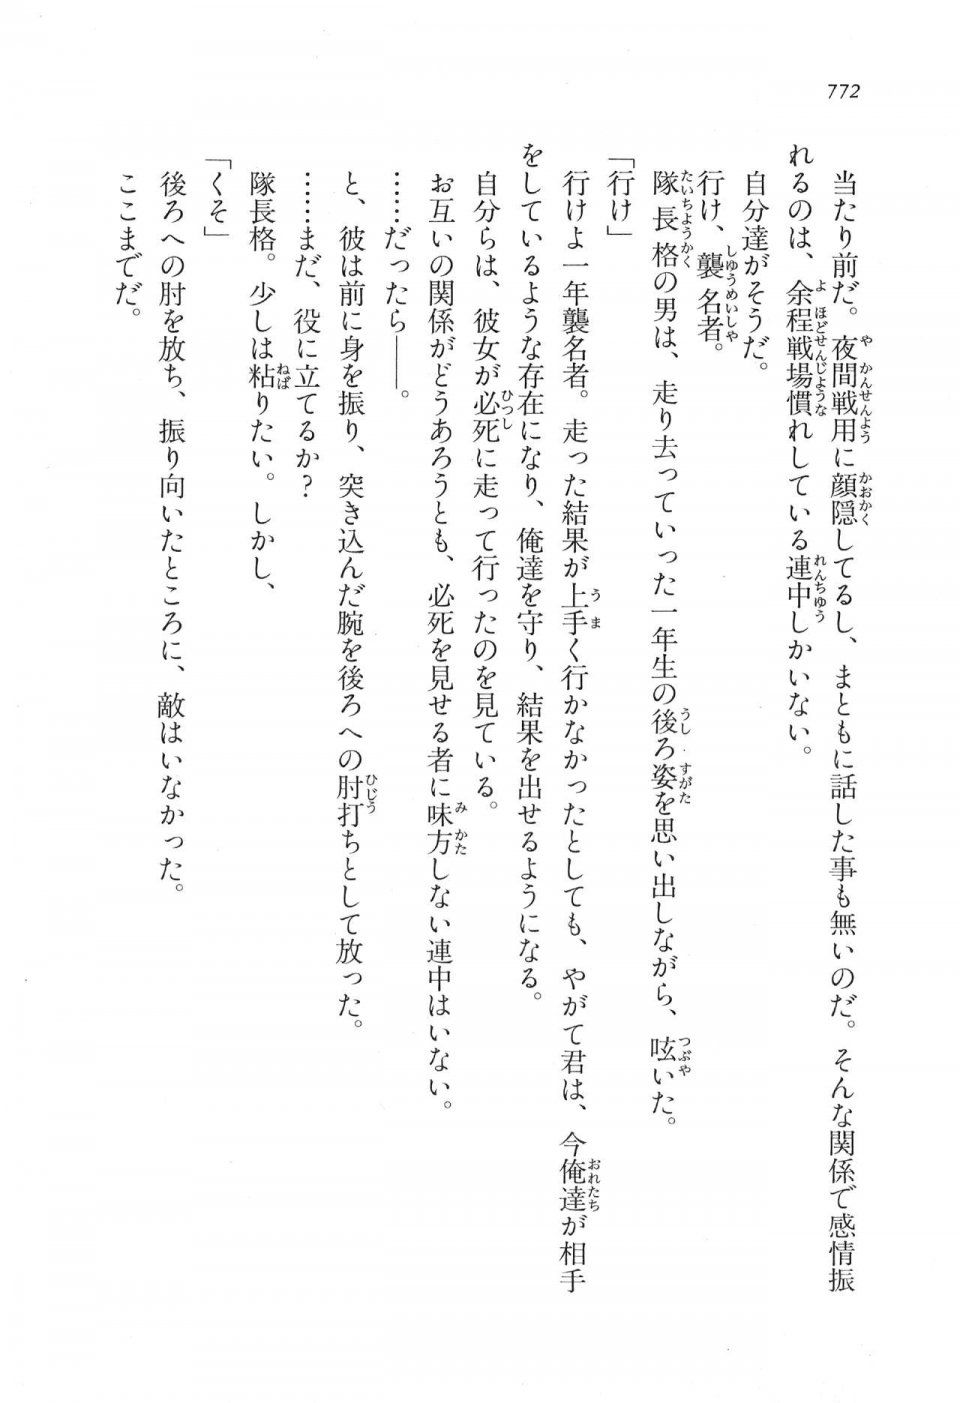 Kyoukai Senjou no Horizon LN Vol 17(7B) - Photo #774